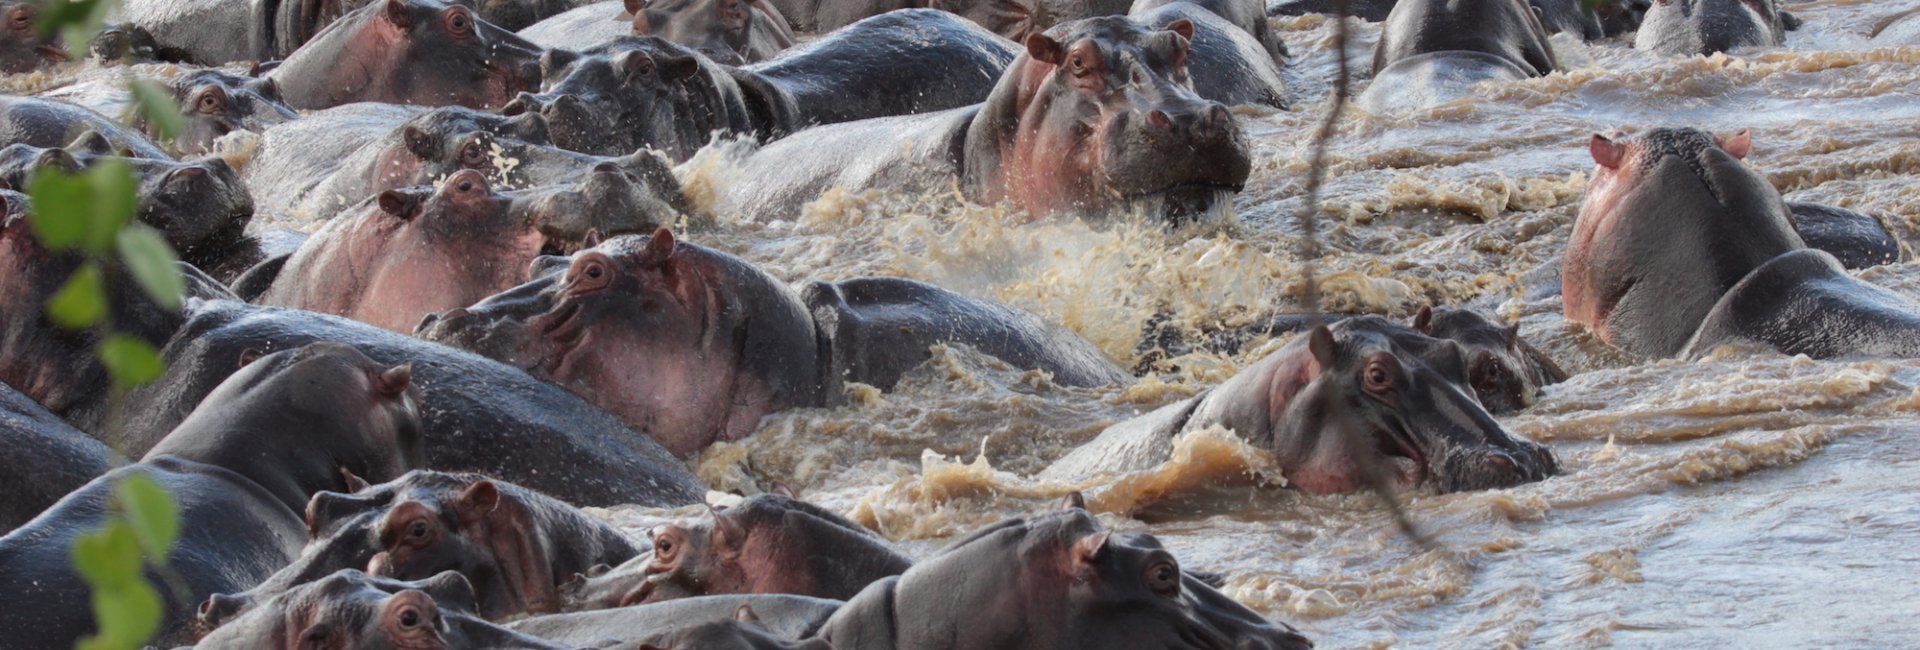 Hippo's on Safari Tanzania